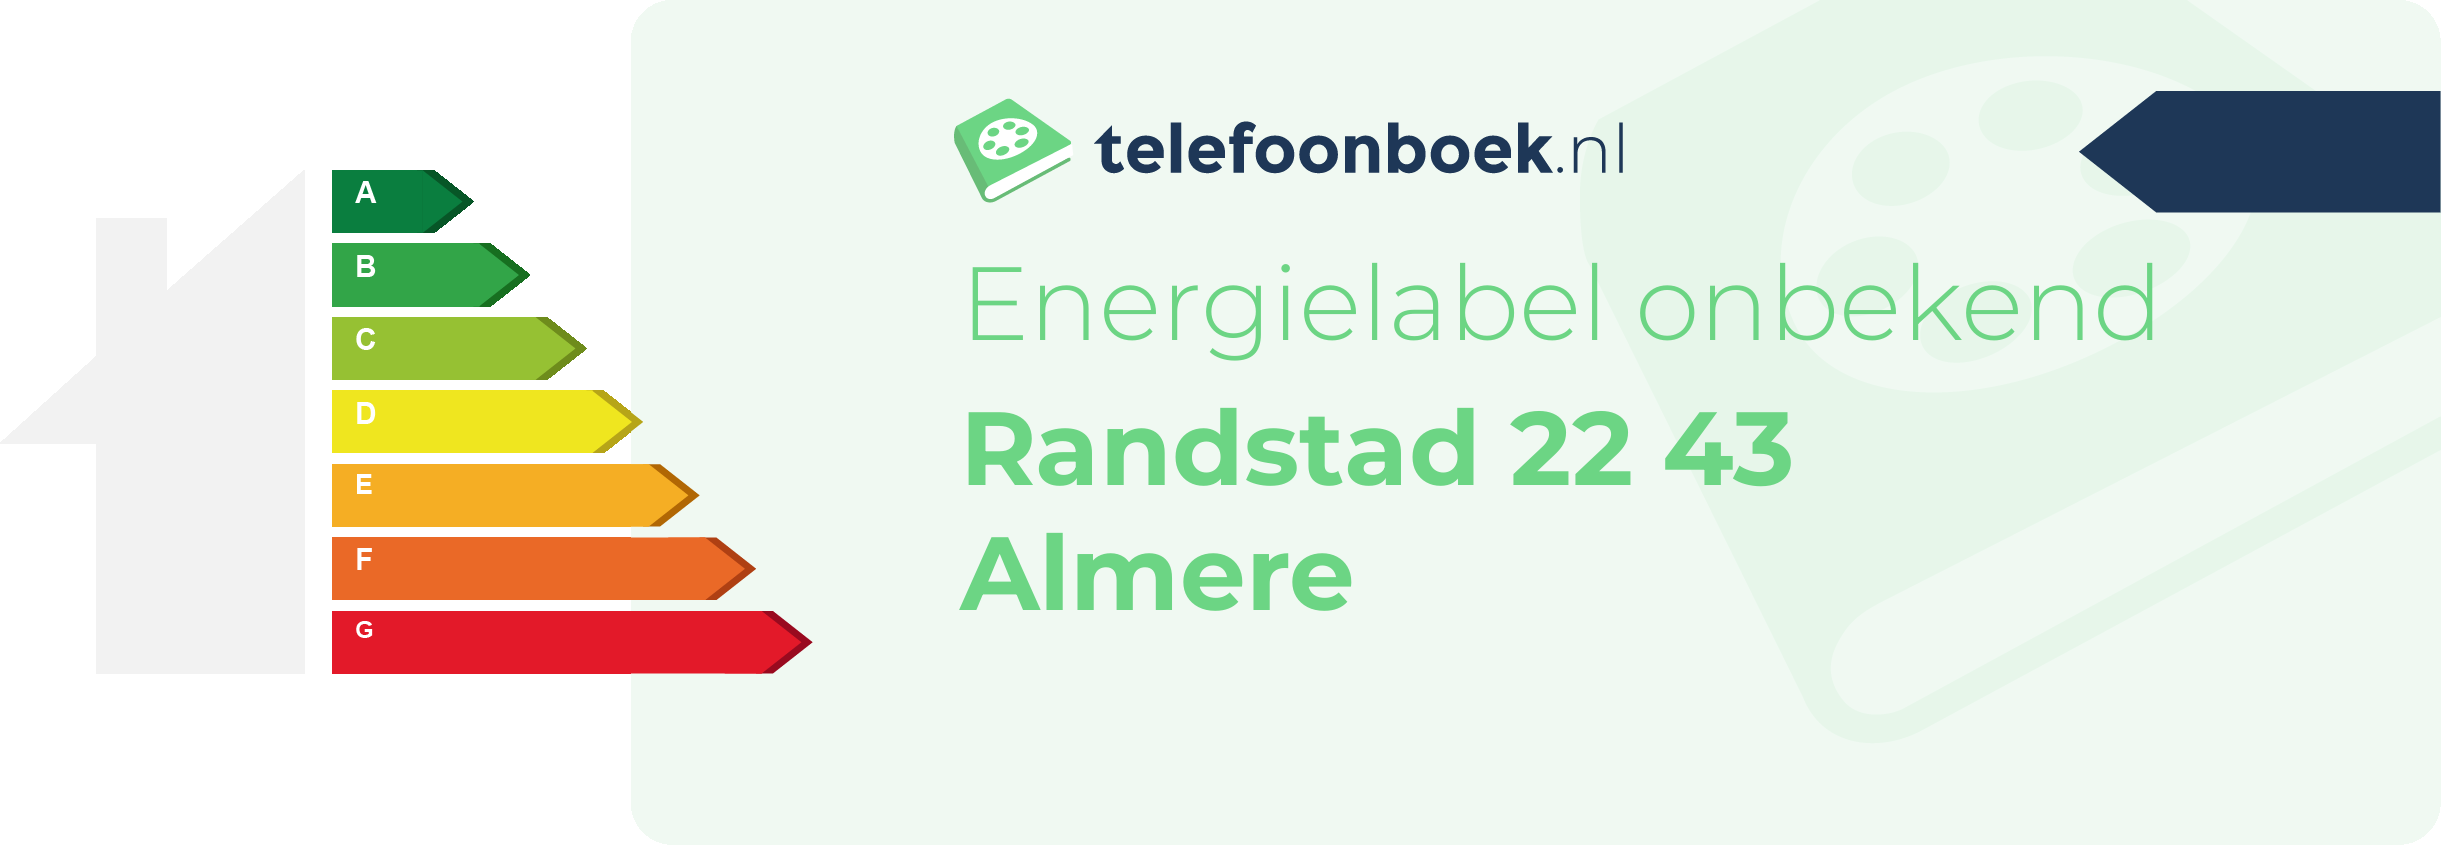 Energielabel Randstad 22 43 Almere